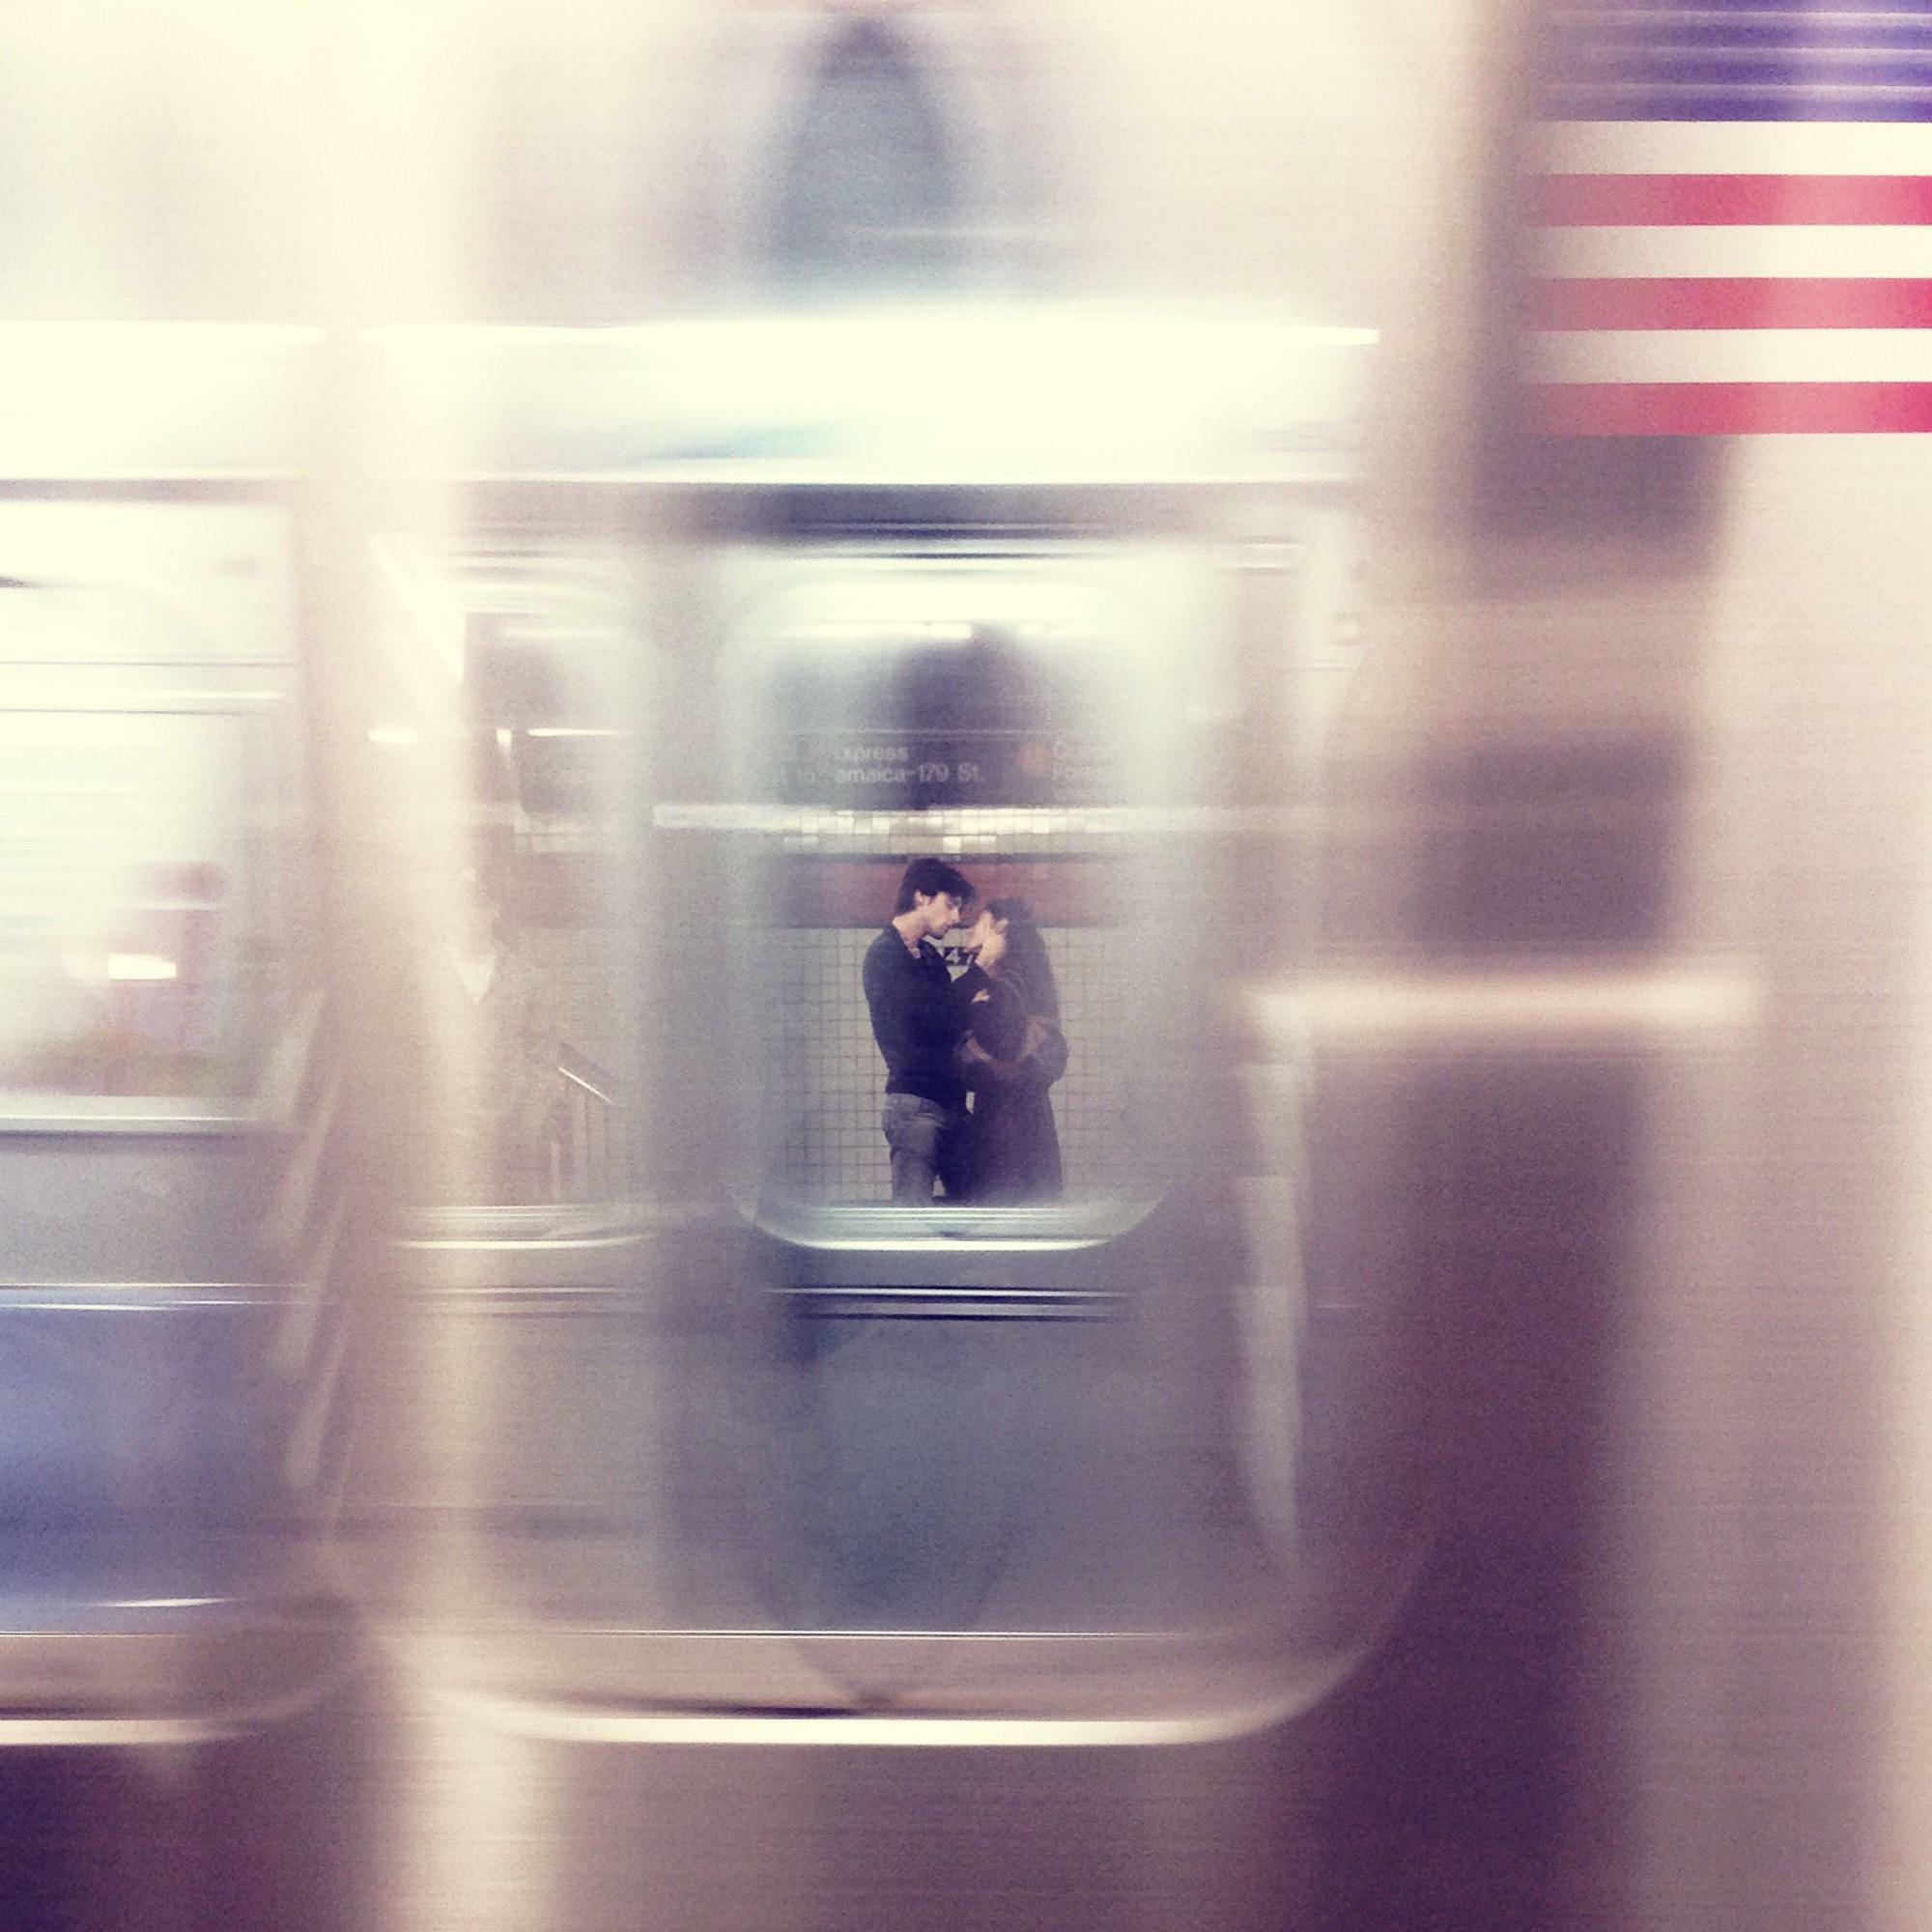 itap à travers un wagon de métro en mouvement lors d’une visite à nyc, le jour de la commémoration, il y a environ un an. un vrai coup de chance pris avec la caméra d’un téléphone.